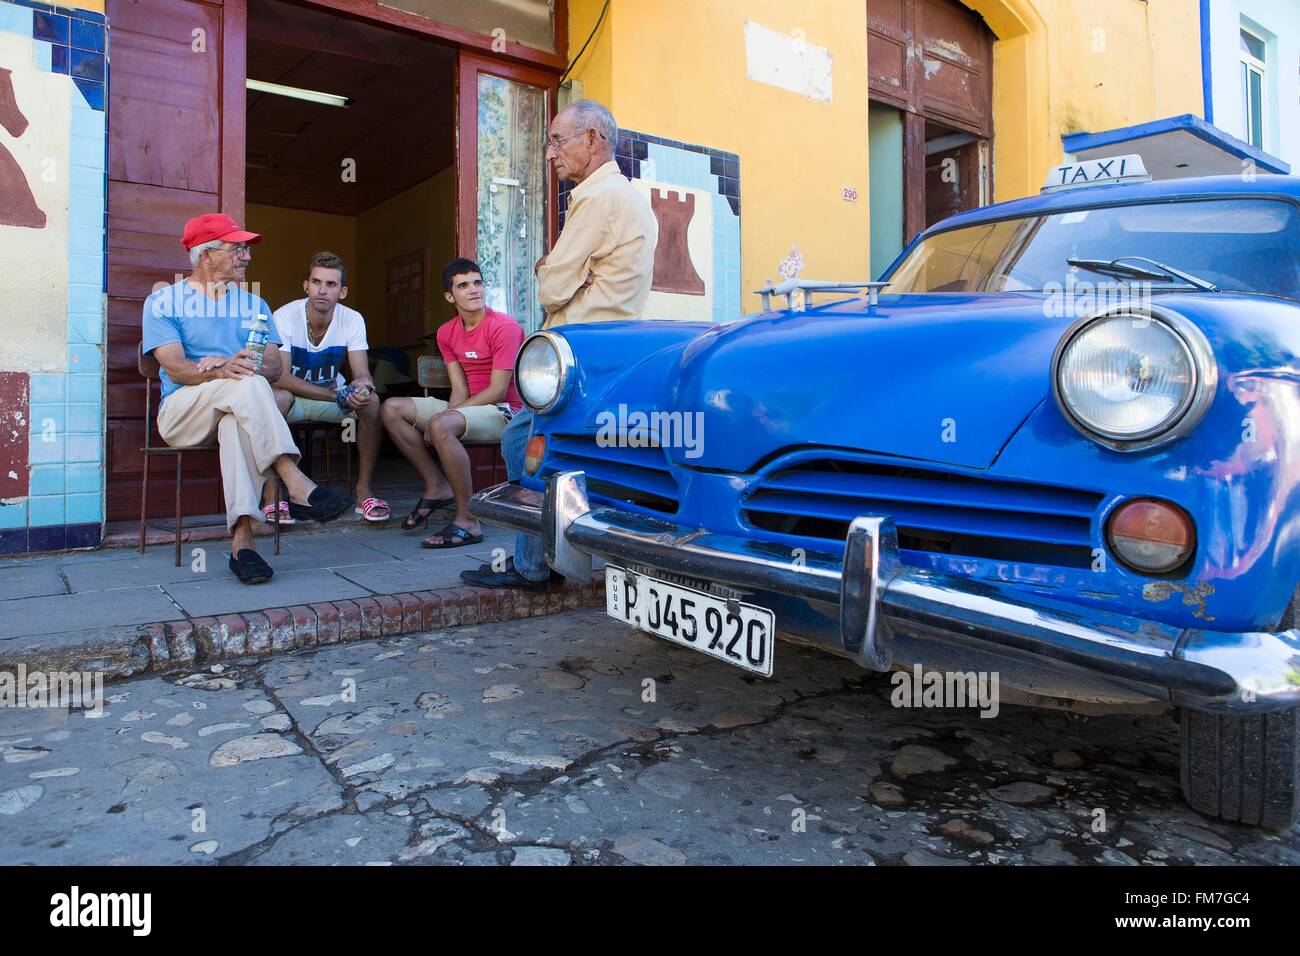 Cuba, Sancti Spiritus Provincia, Trinidad de Cuba elencati come patrimonio mondiale dall'UNESCO, la gente seduta dal club di scacchi e la vettura americana Foto Stock